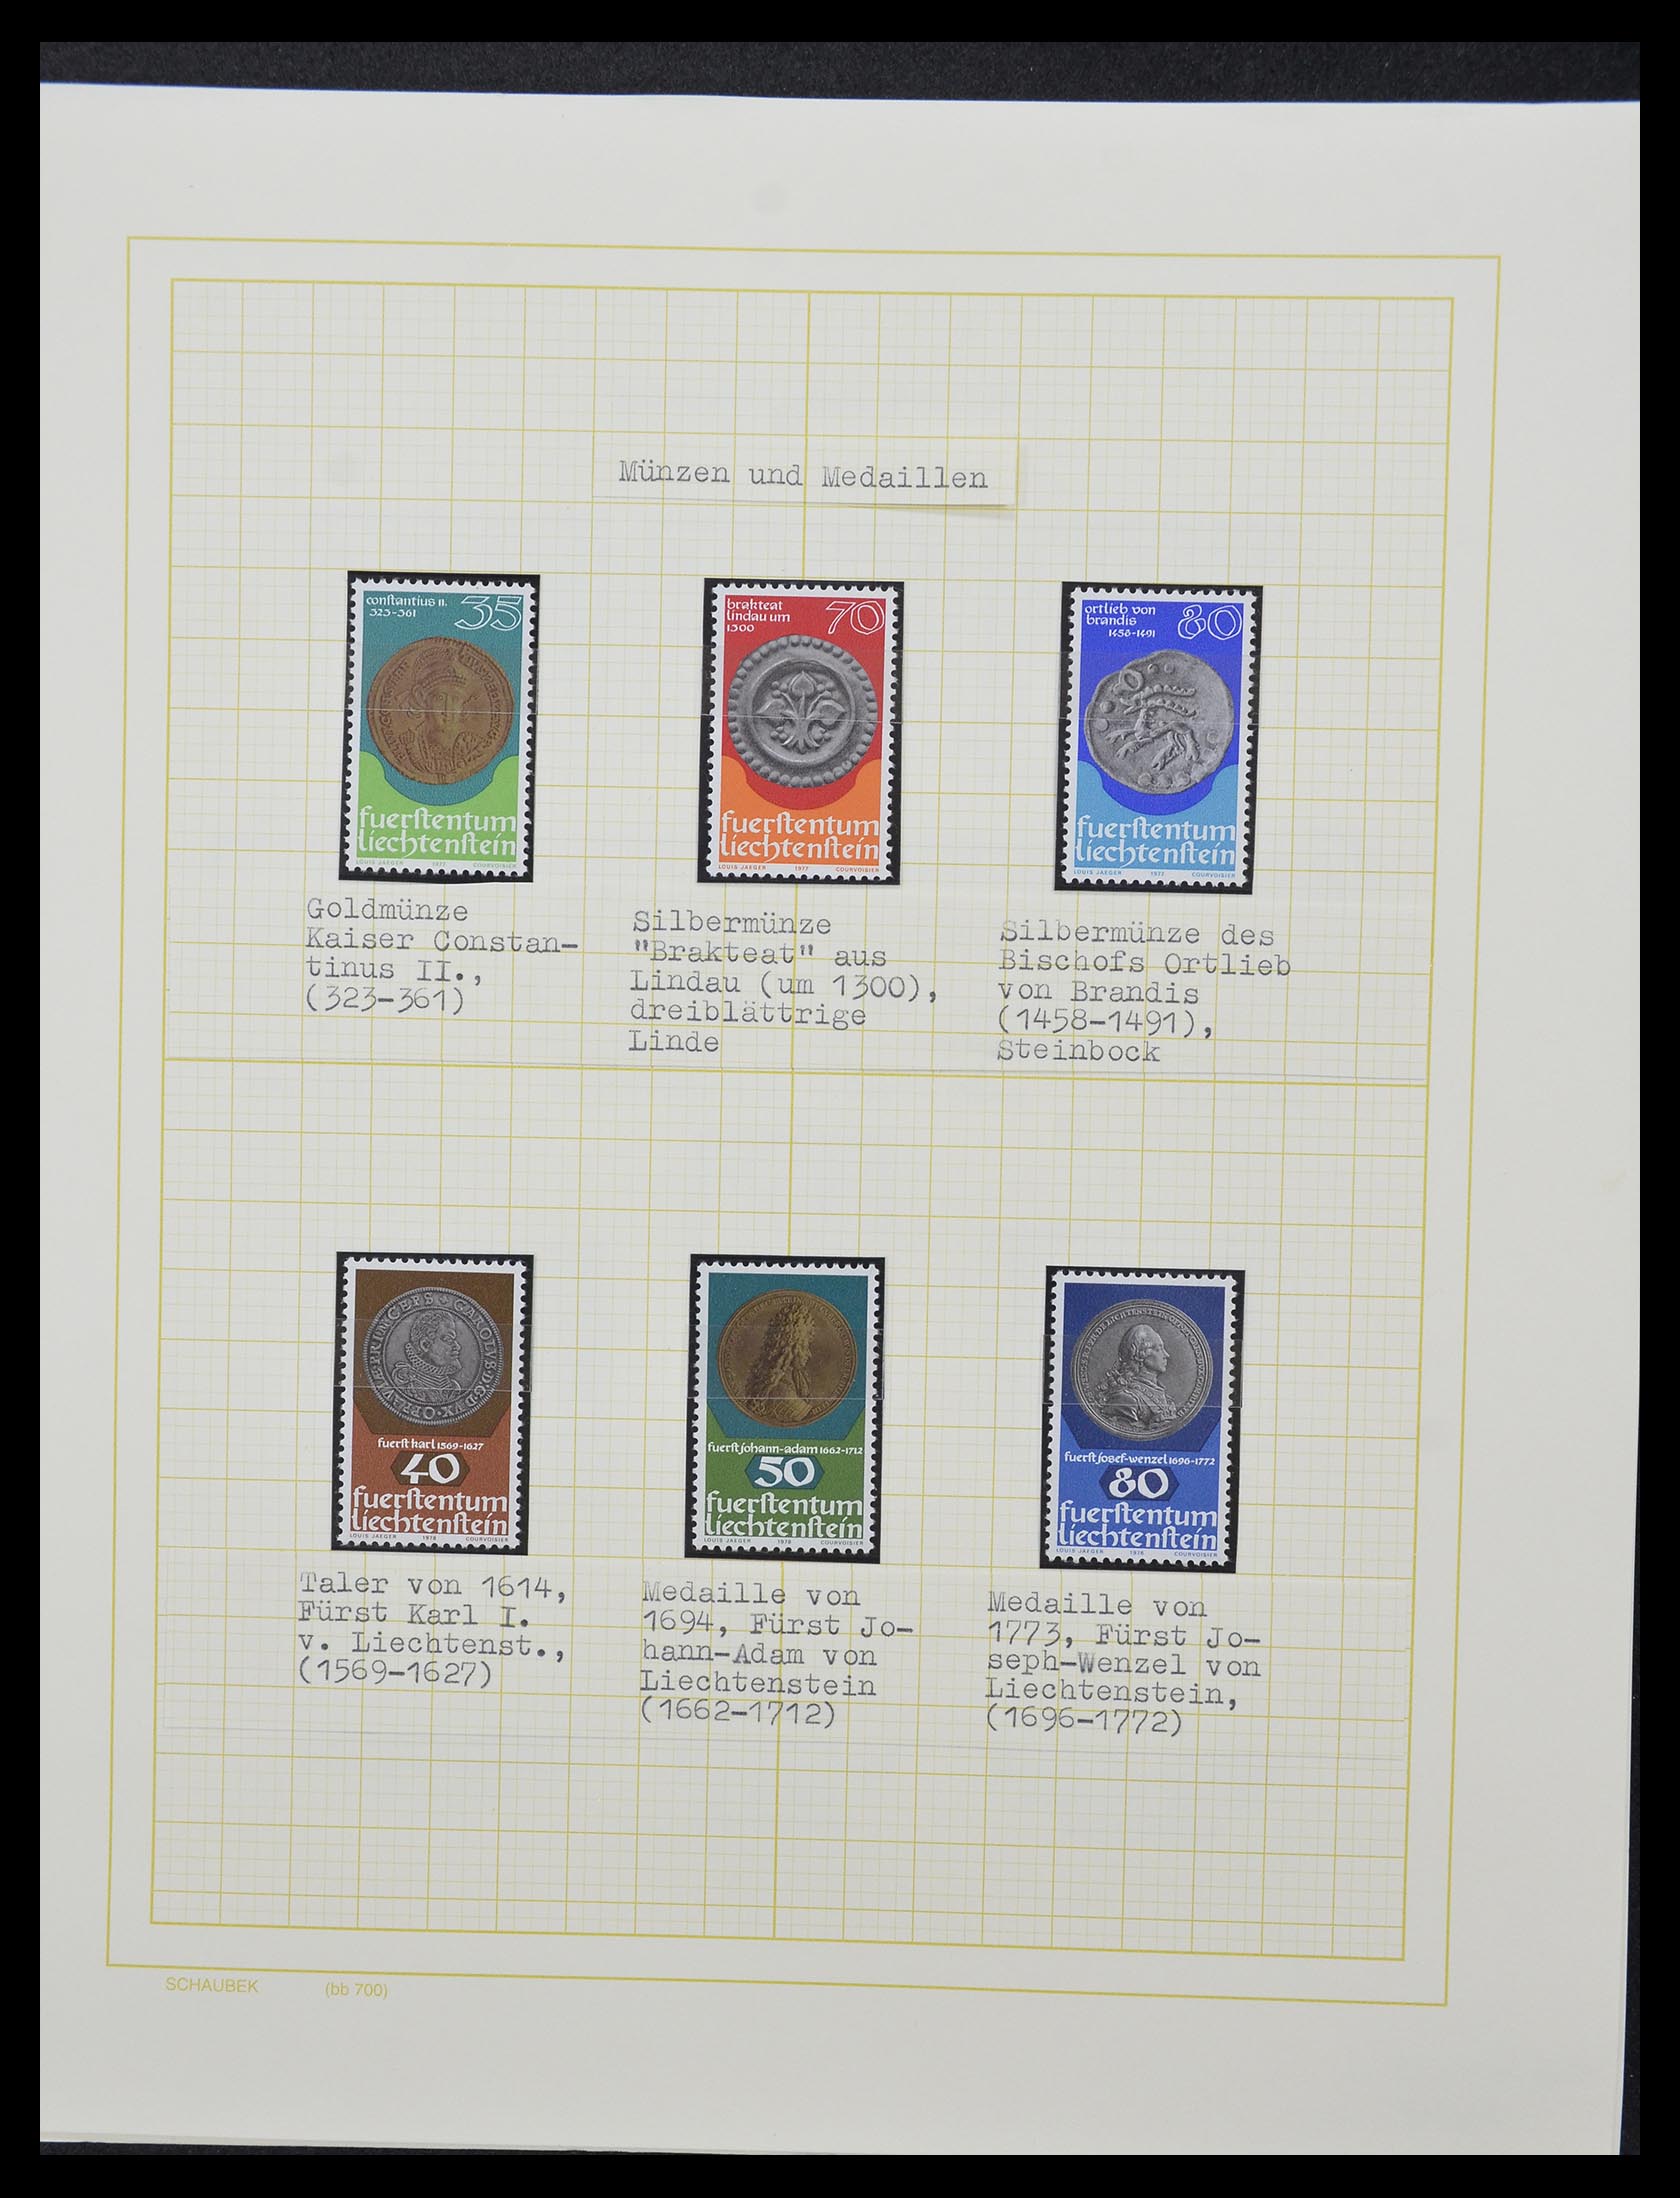 33138 030 - Stamp collection 33138 Liechtenstein 1912-2002.